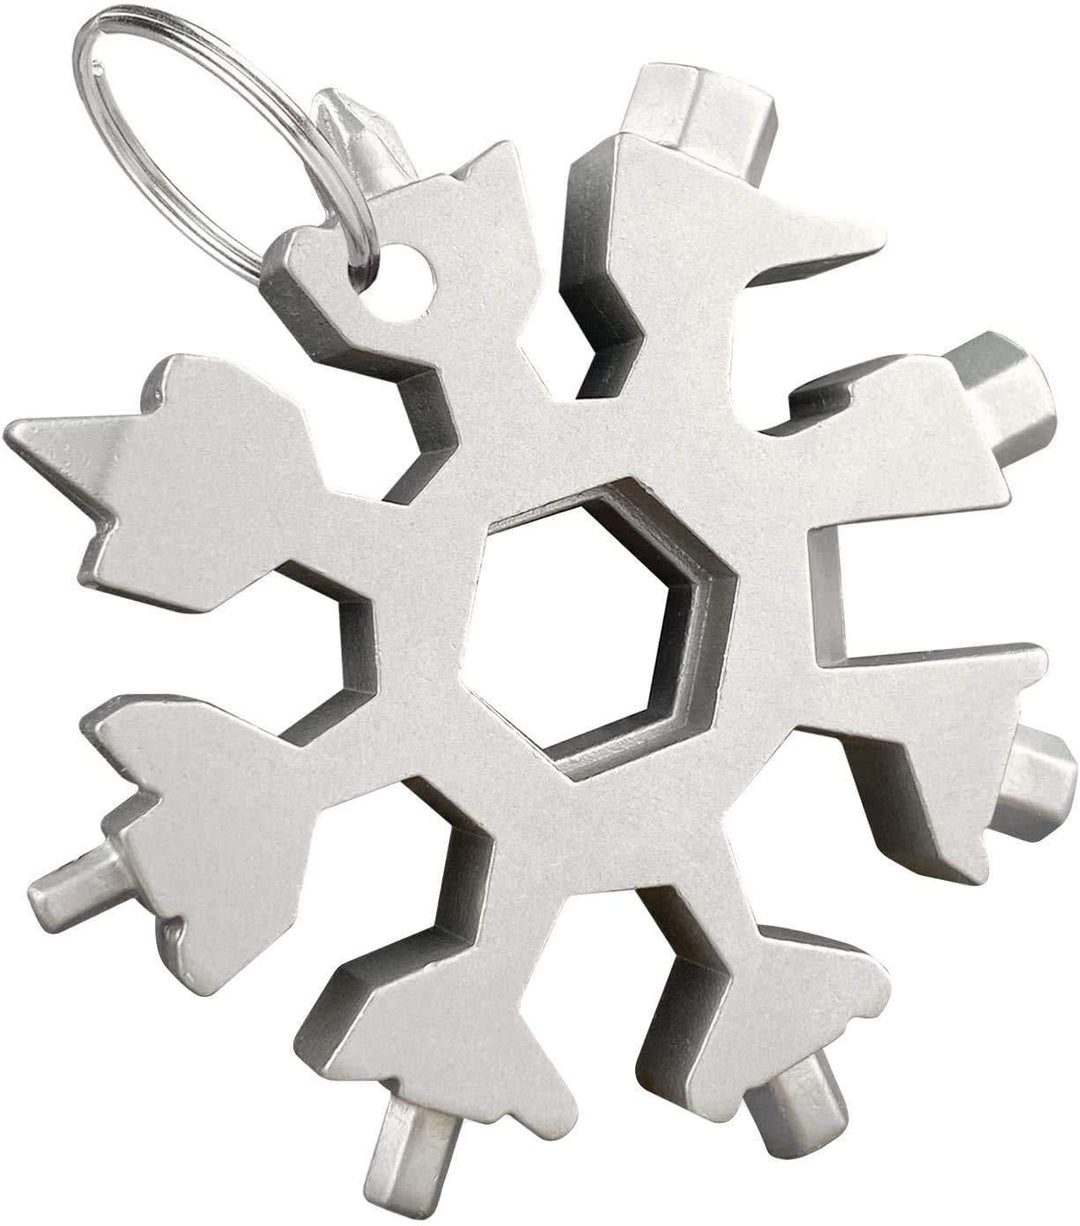 18 in 1 Multi-Purpose Snowflake Tool